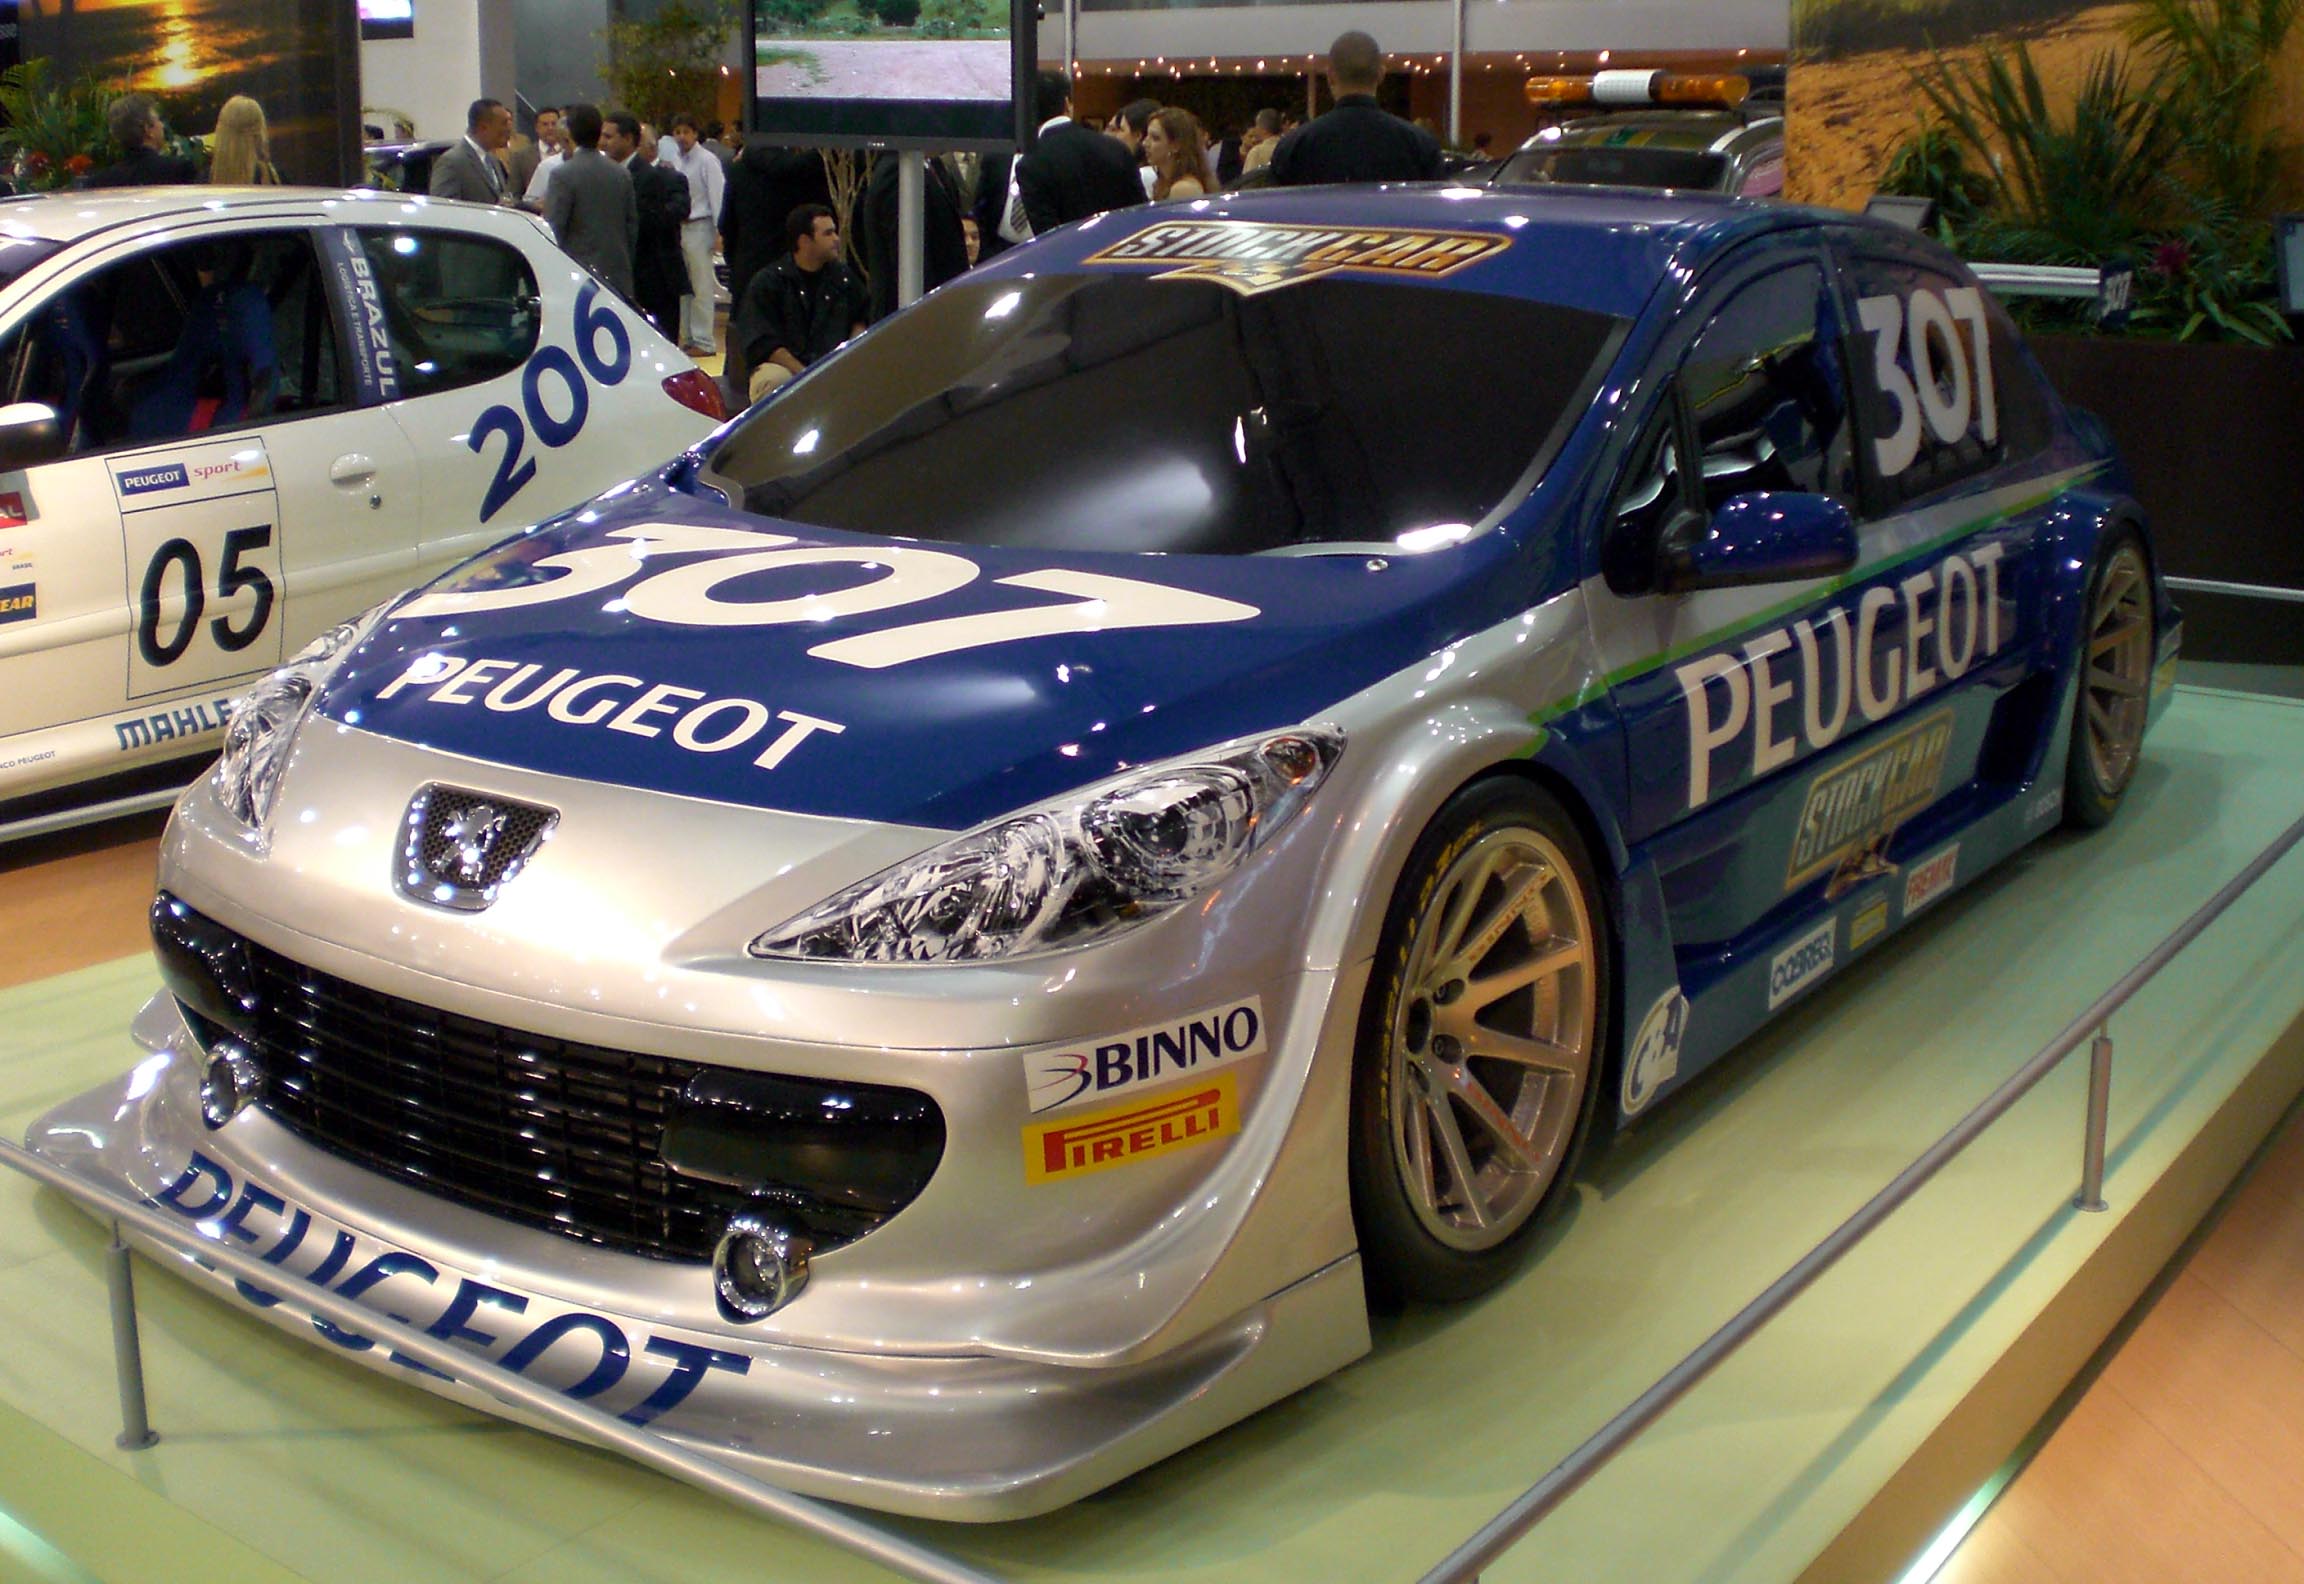 http://upload.wikimedia.org/wikipedia/commons/e/ec/Stock_Car_V8_Brasil_2007_Peugeot_307_concept.jpg